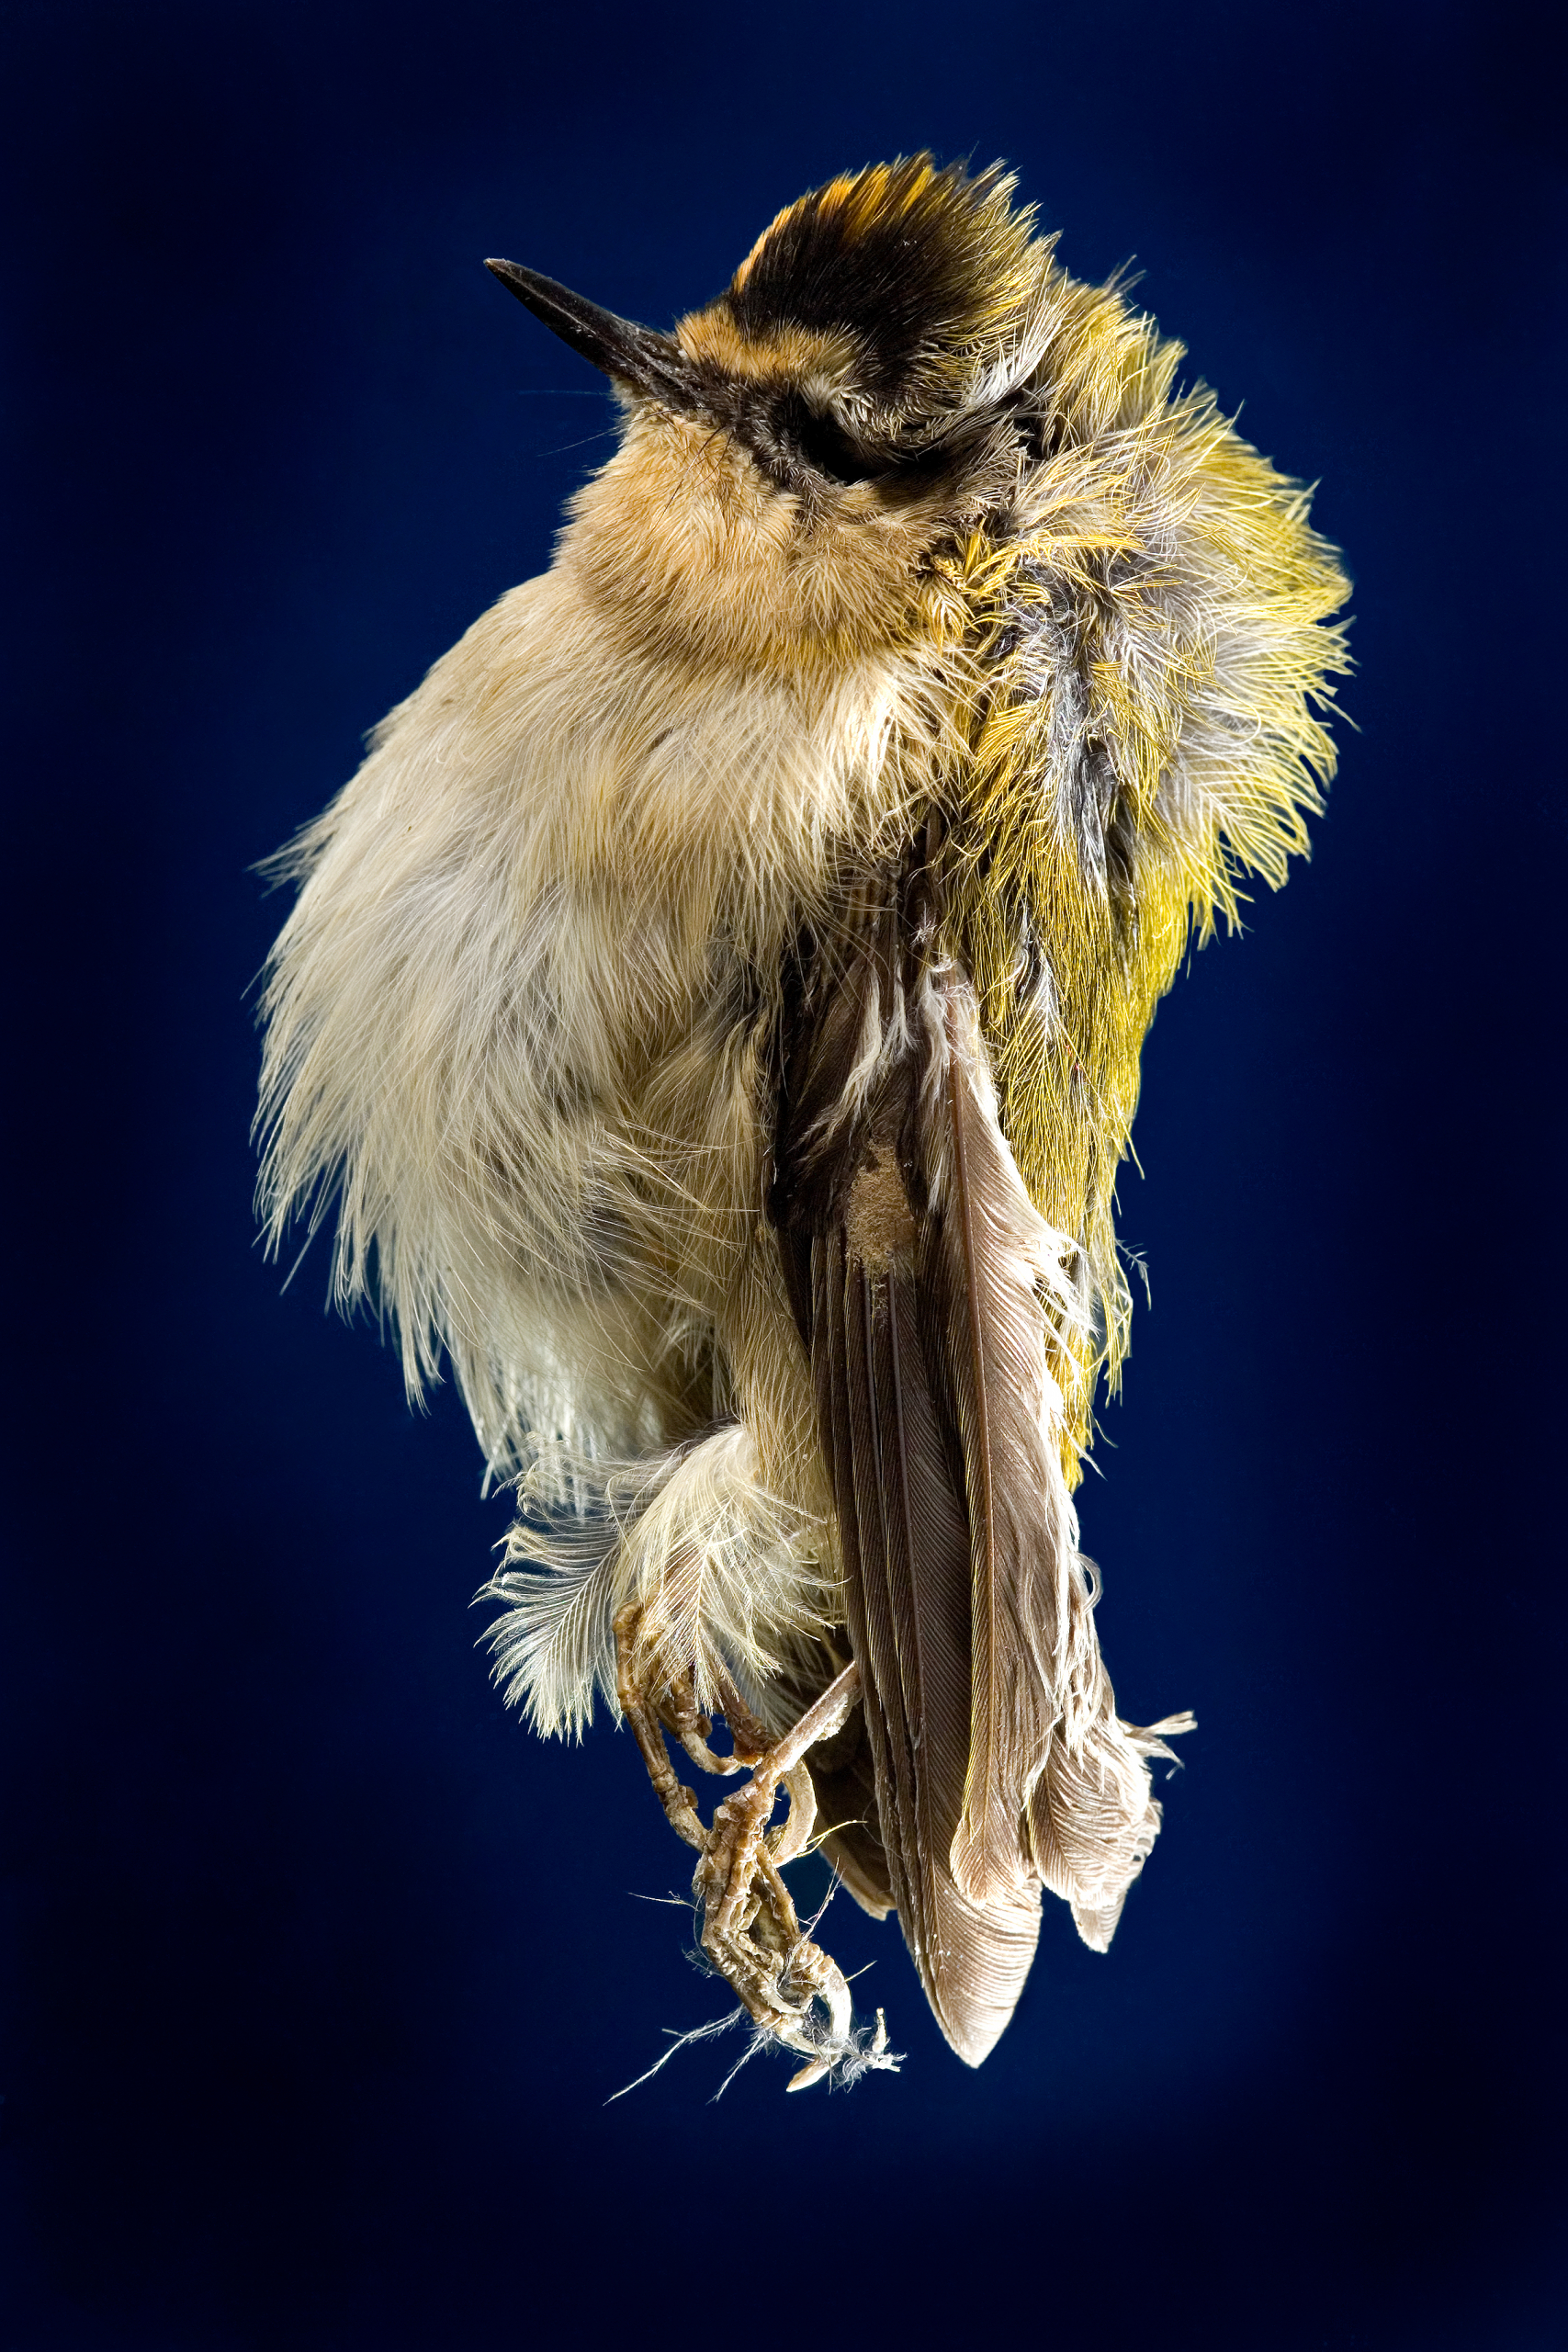 Mumie eines kleinen Vogels namens Sommergoldhähnchen vor einem dunkelblauen Hintergrund.